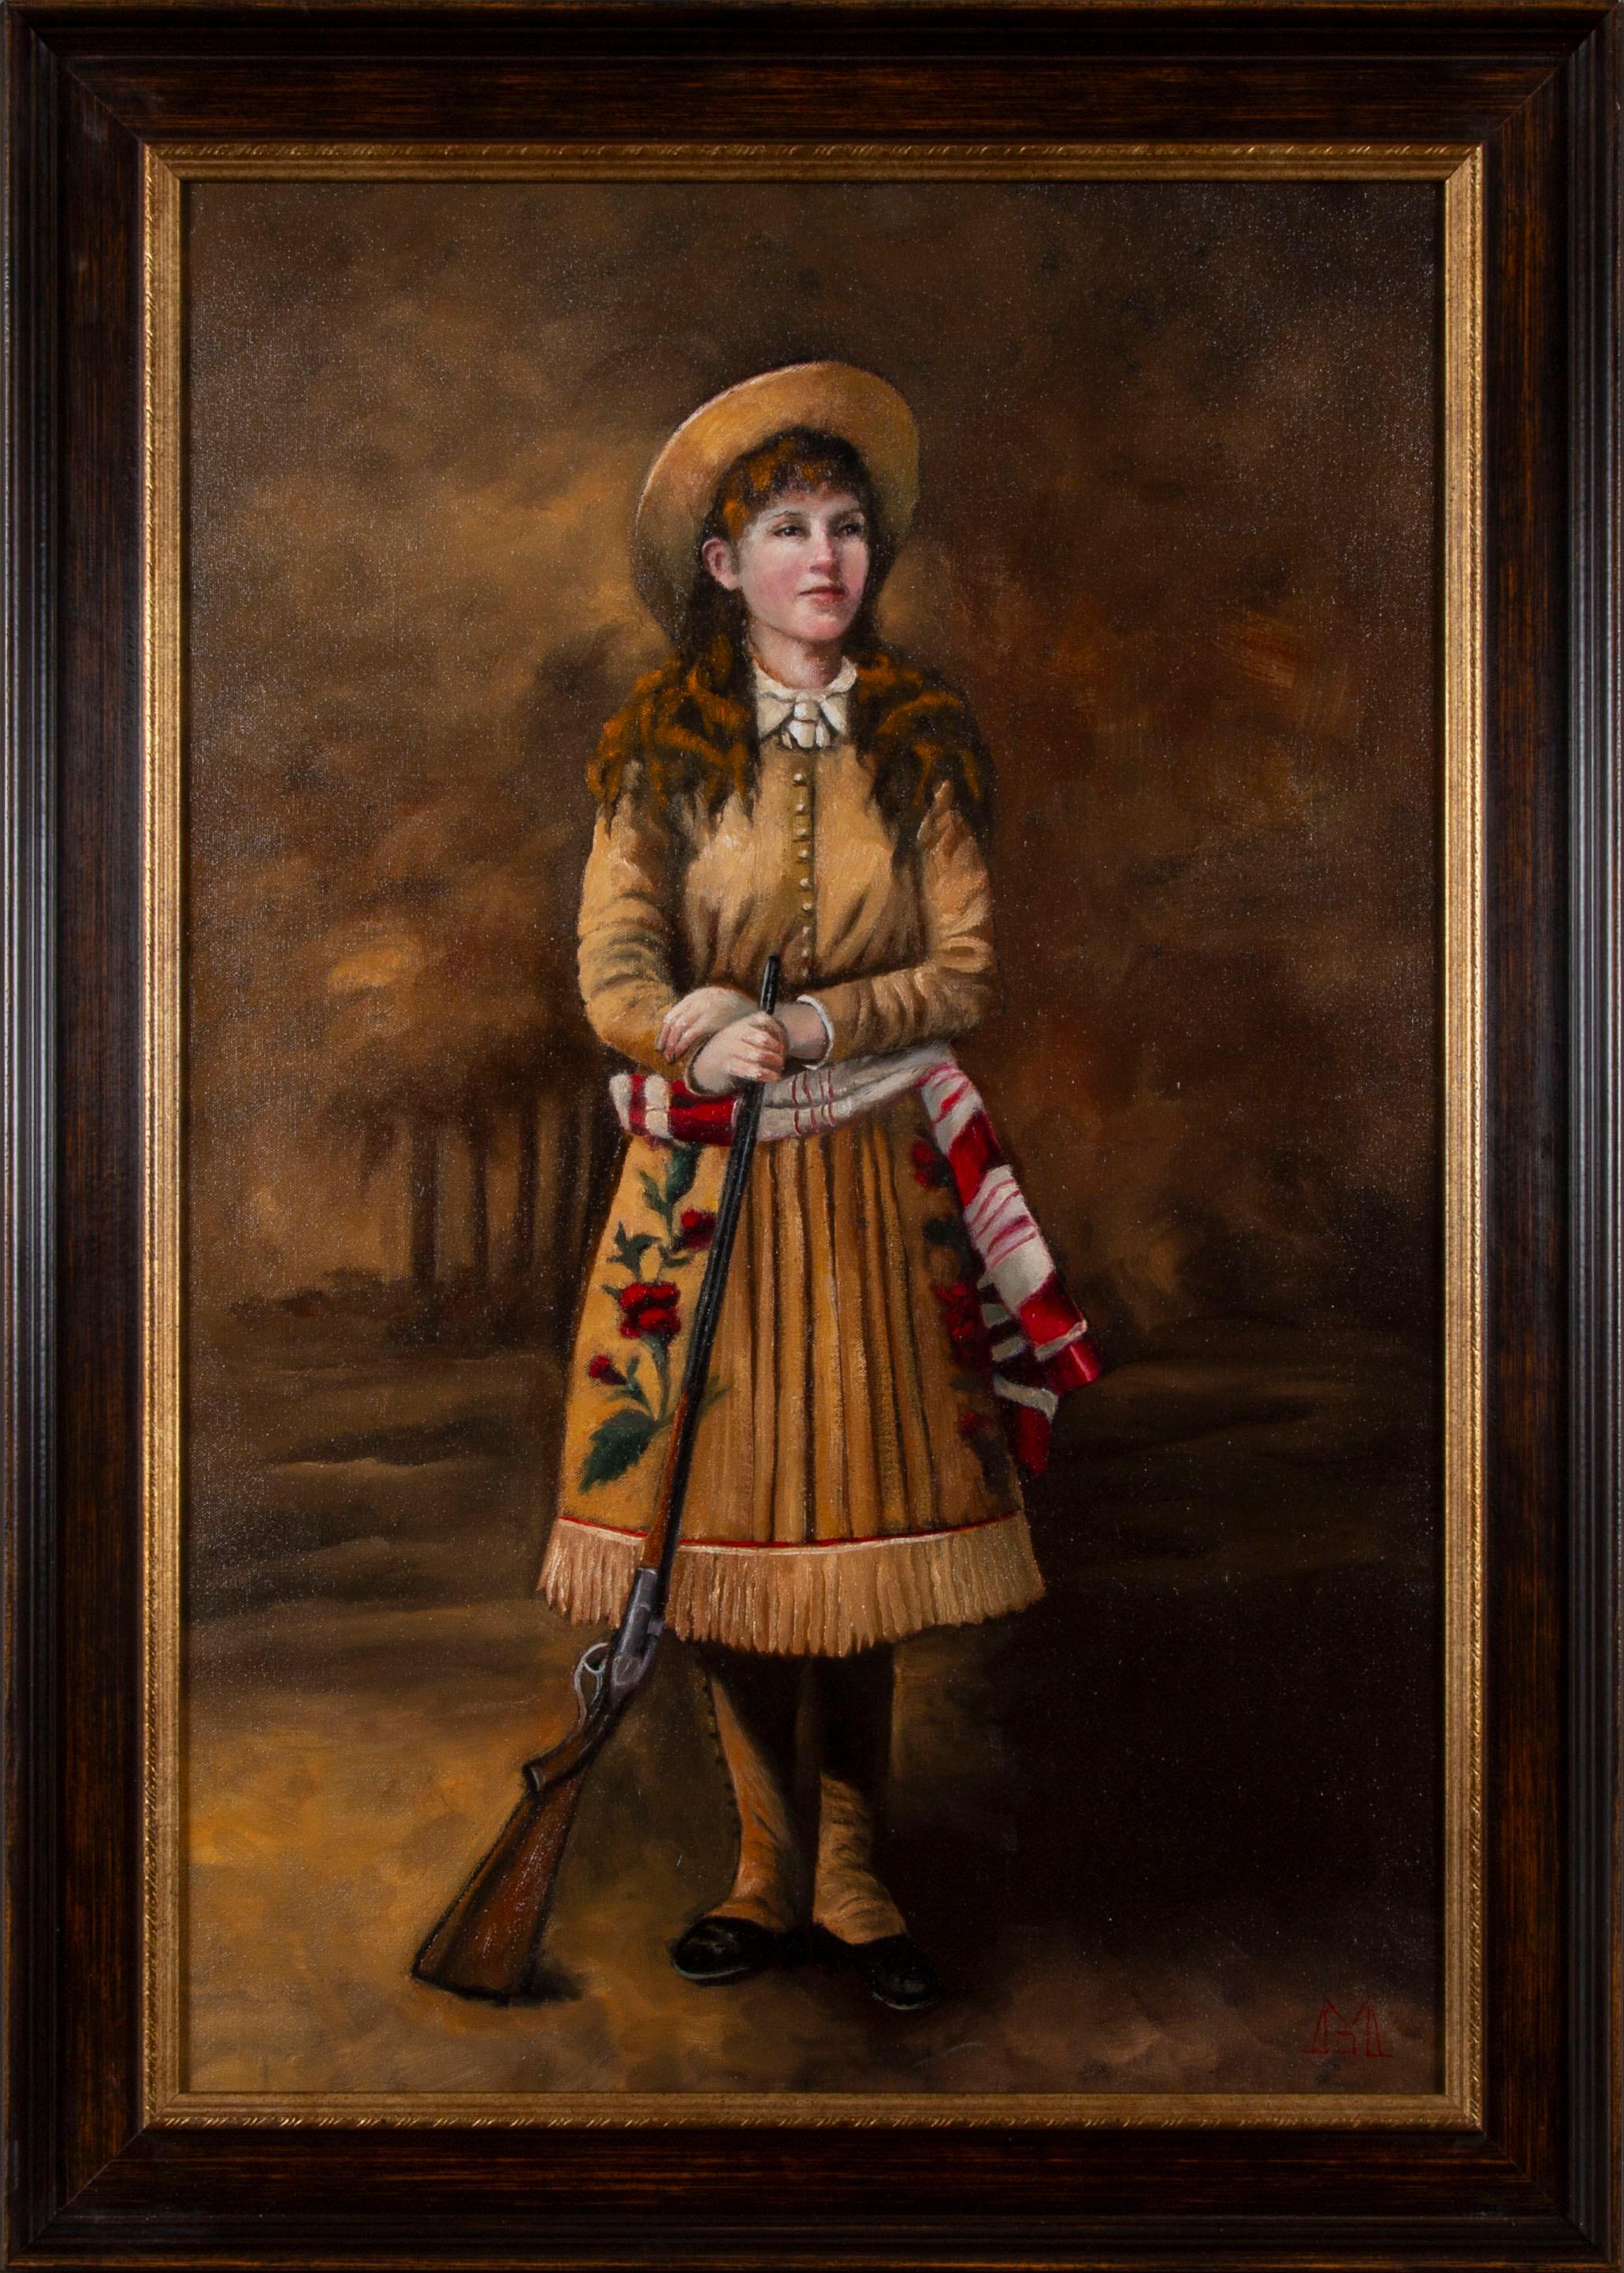 "Annie Gets Her Gun" par Deborah McKenna, huile originale sur toile, 30" x 20", 35" x 25" dans un cadre en bois massif.

Annie Oakley (née Phoebe Ann Mosey ; 13 août 1860 - 3 novembre 1926) était une tireuse d'élite américaine qui a joué dans Le Far